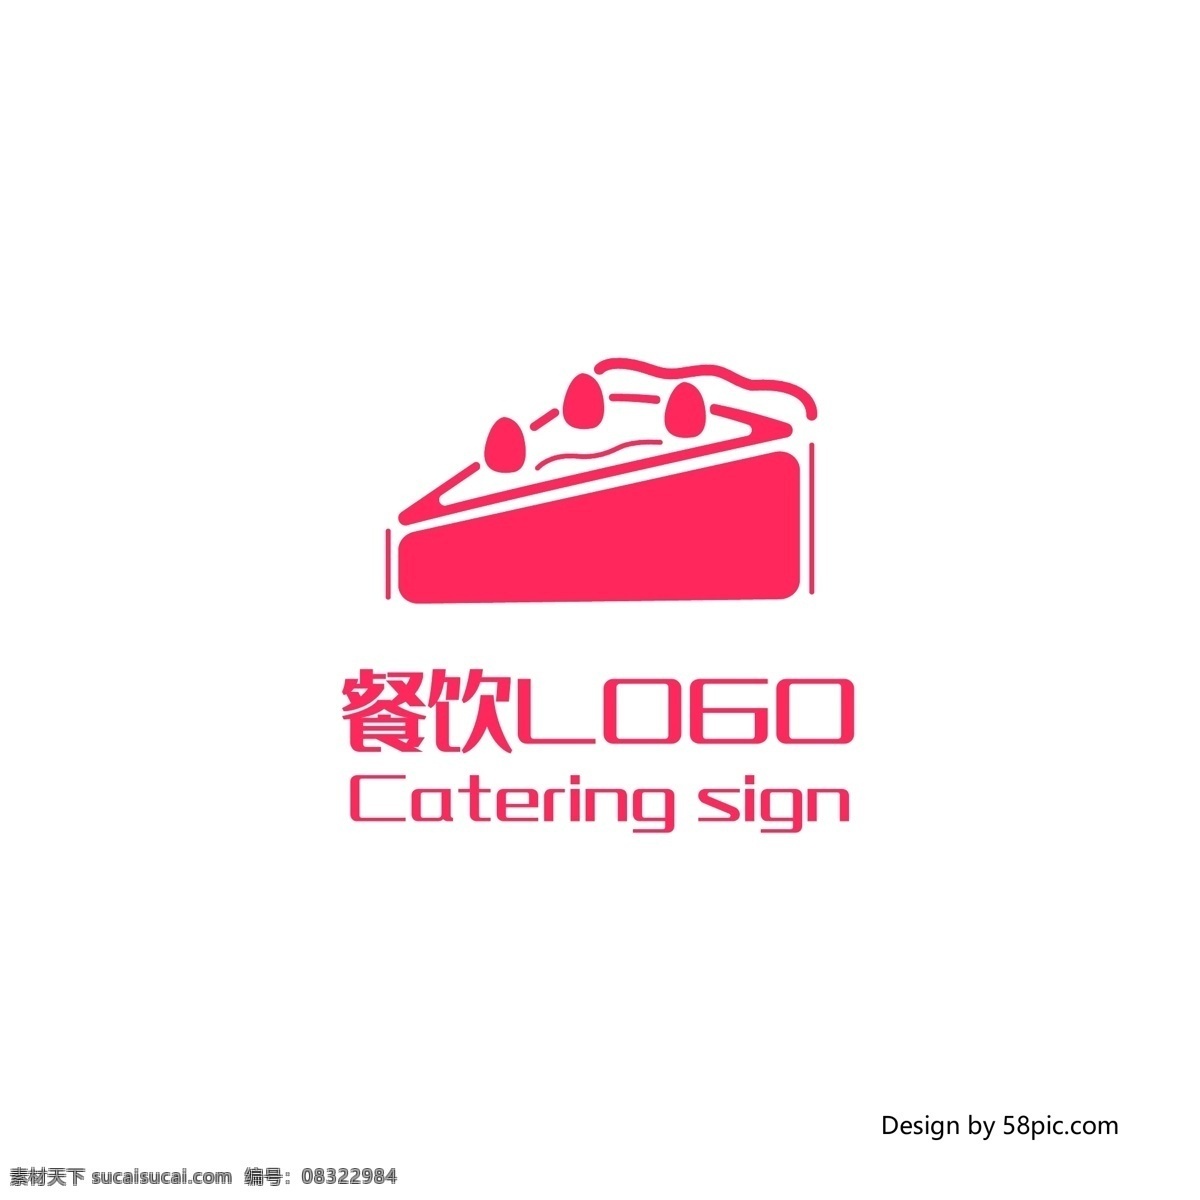 原创 创意 手绘 蛋糕 甜品 餐厅 餐饮 logo 标志 可商用